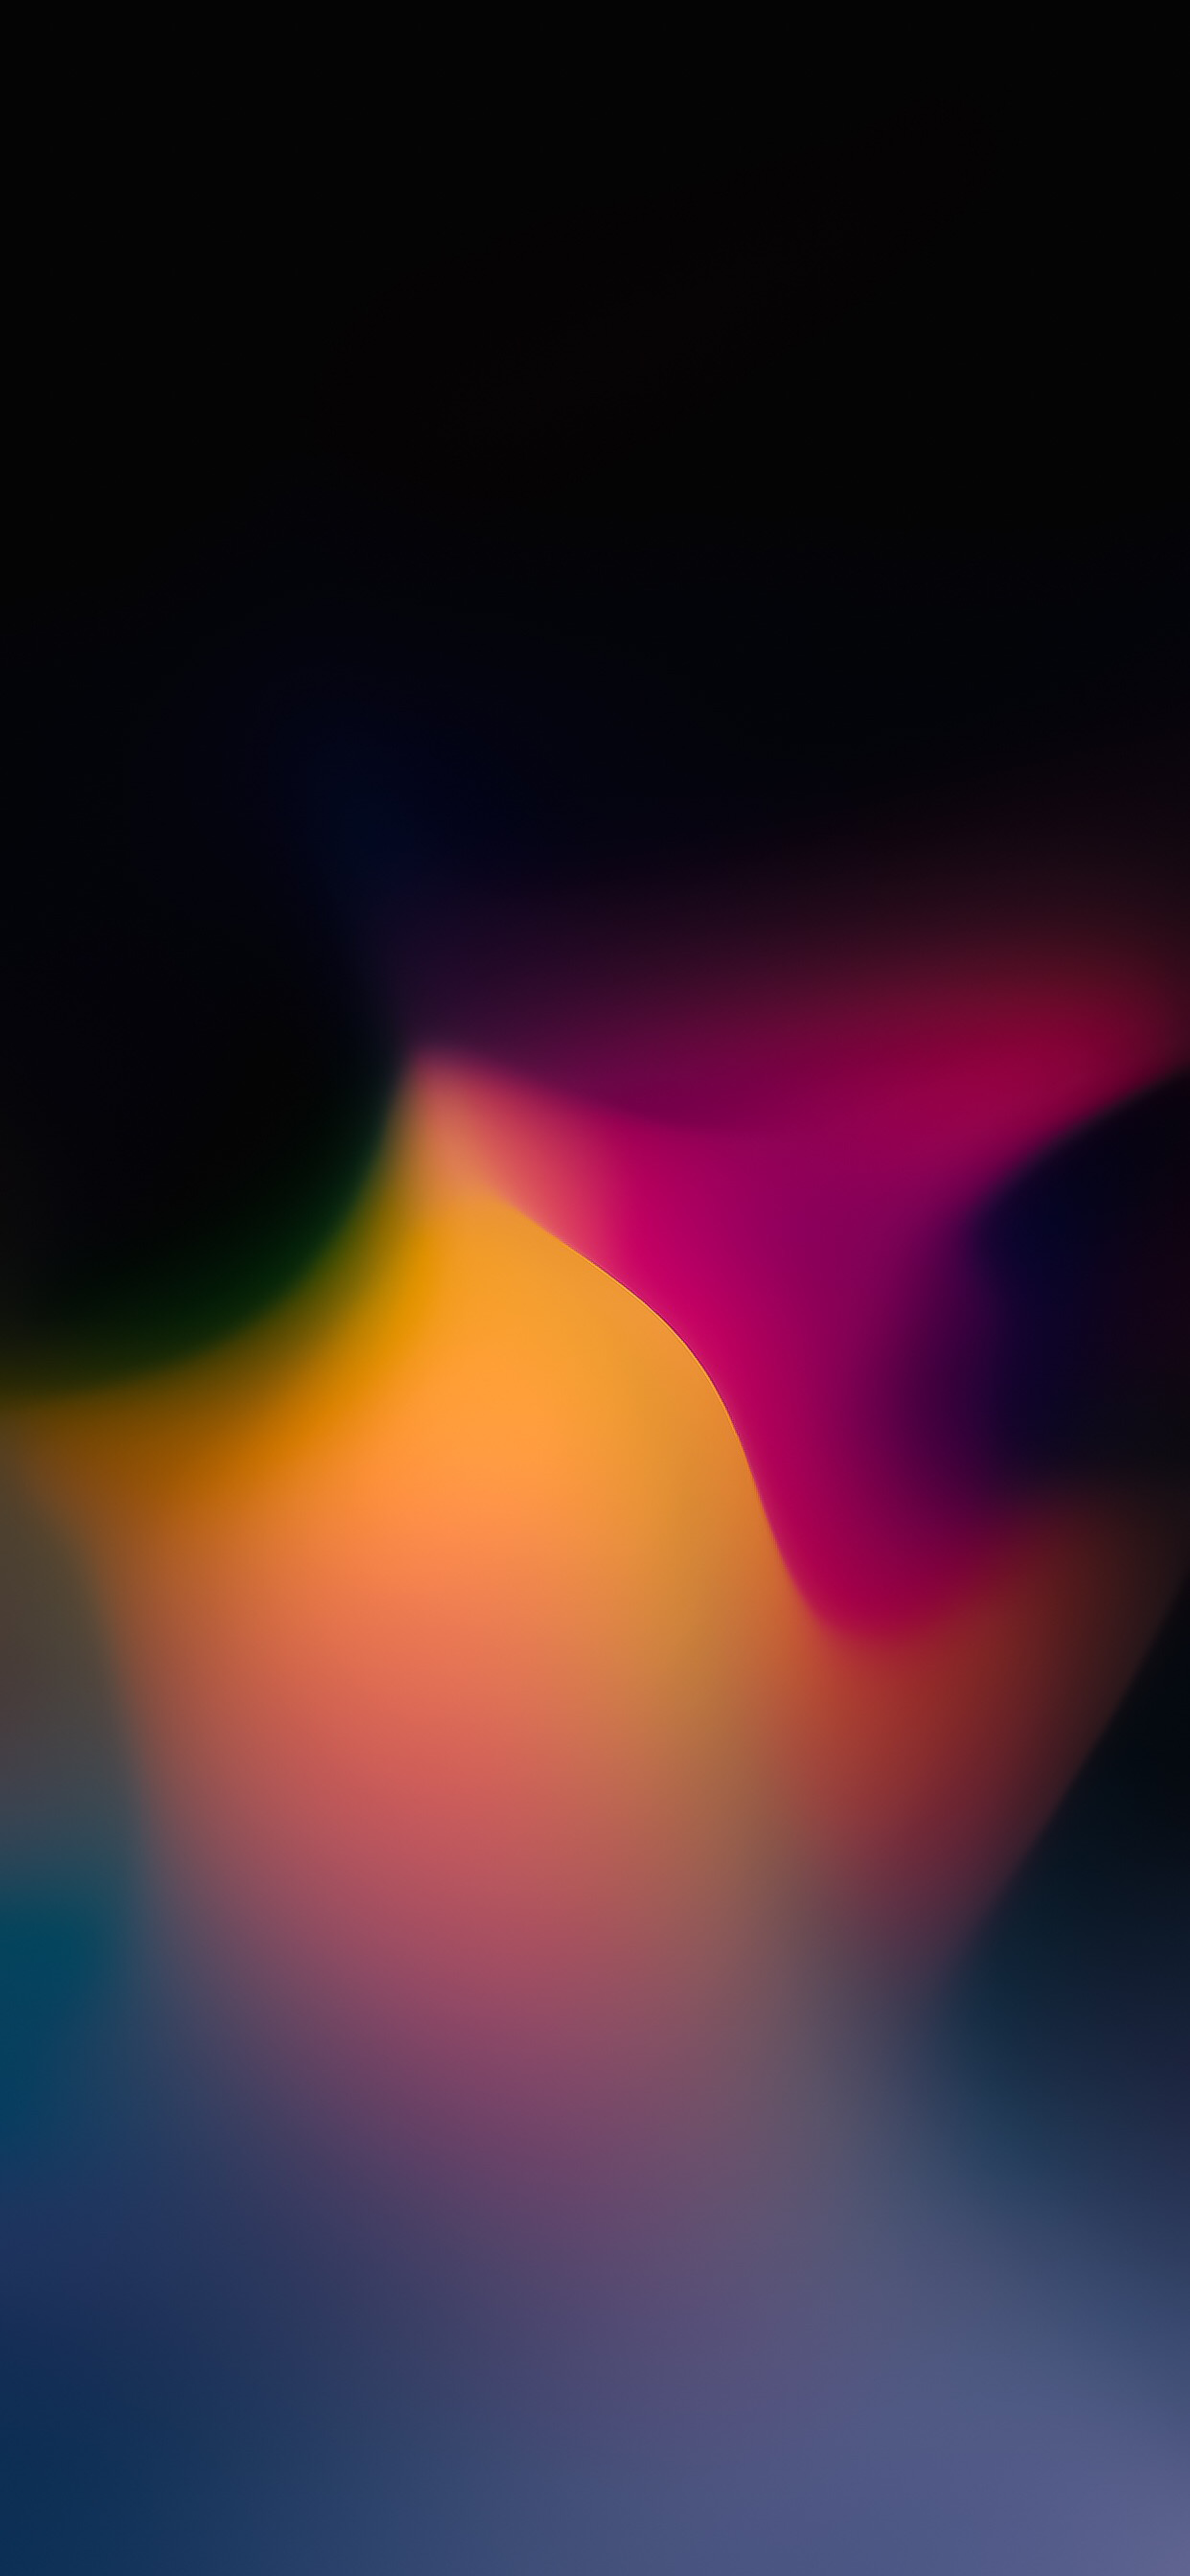 FluidiMix v2 for iPhoneXSMAX-yellow pink true black gradient wallpaper iphone ar72014